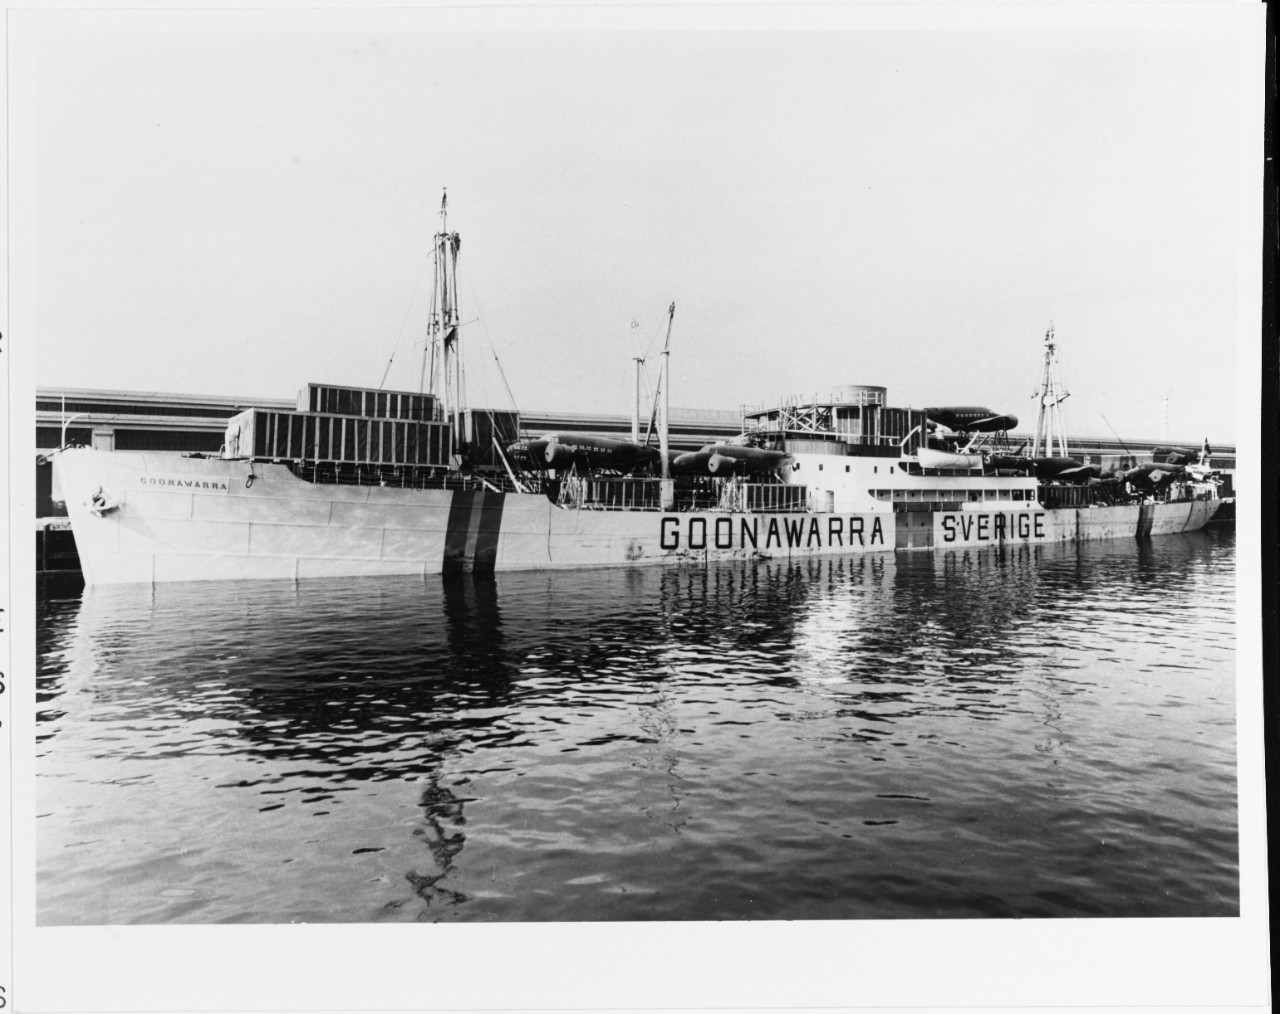 M. V. GOONAWARRA (Swedish Merchant Cargo Ship, 1937-1968)